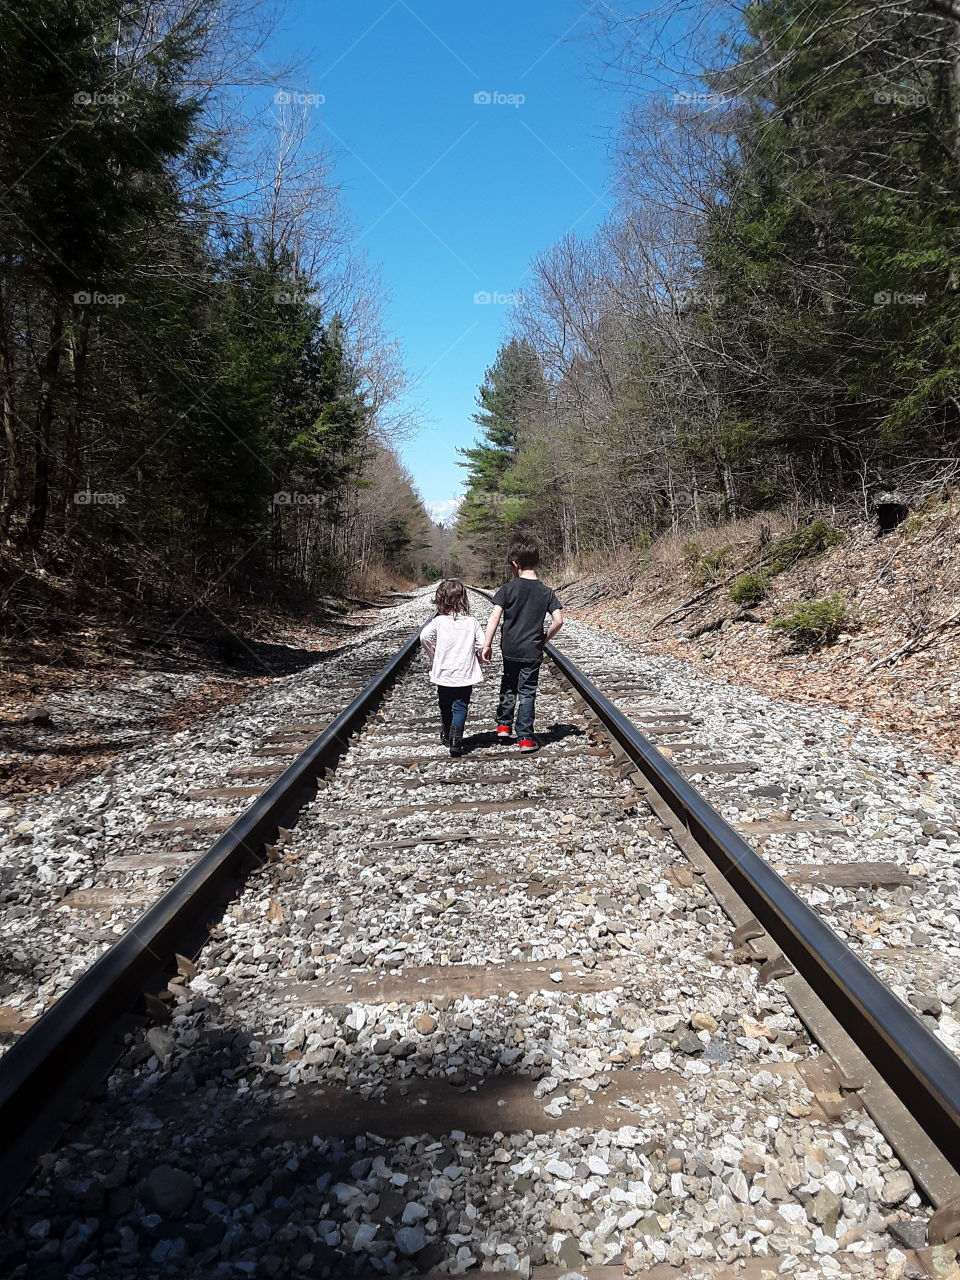 kids on train tracks